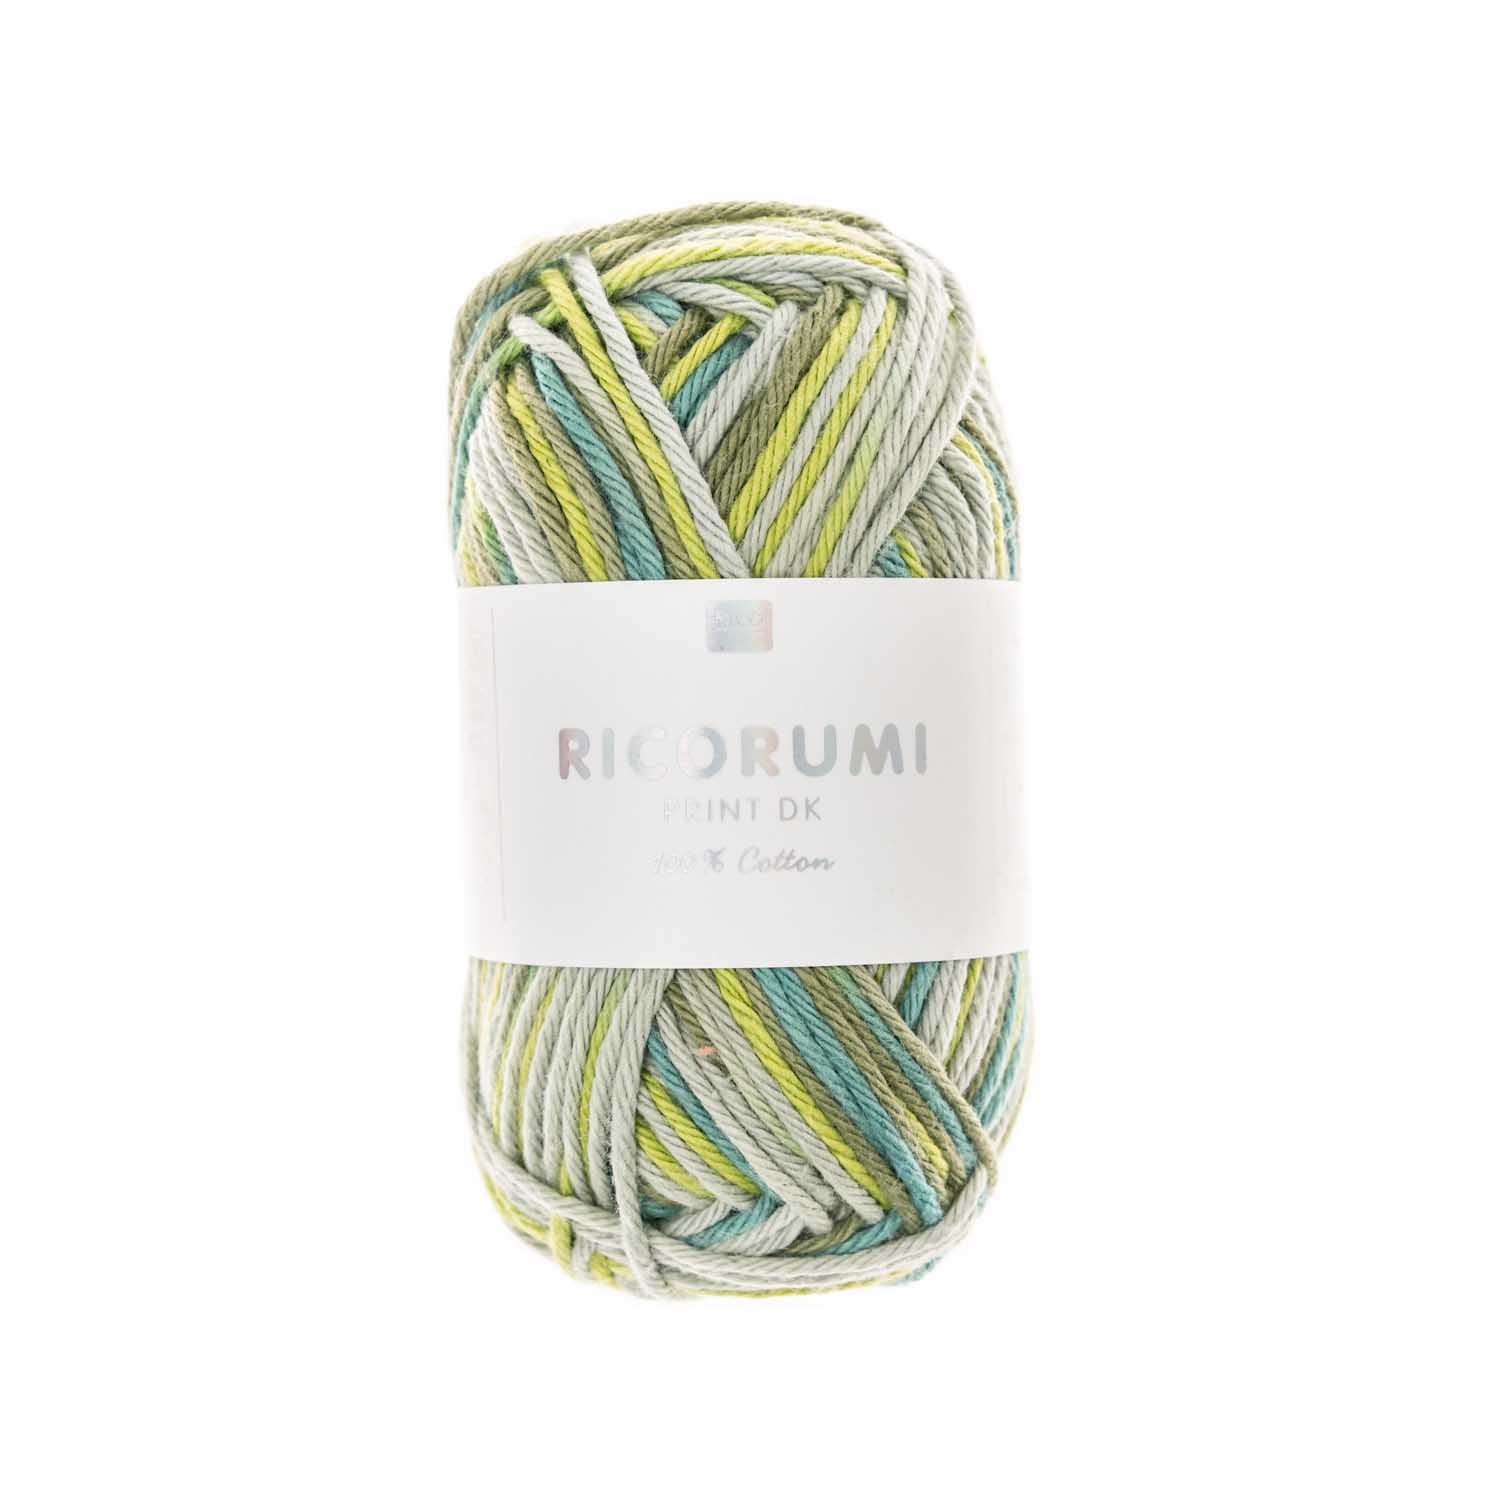 Ricorumi Print Baumwollgarn grün mix  25g 57,5m 100% Baumwolle